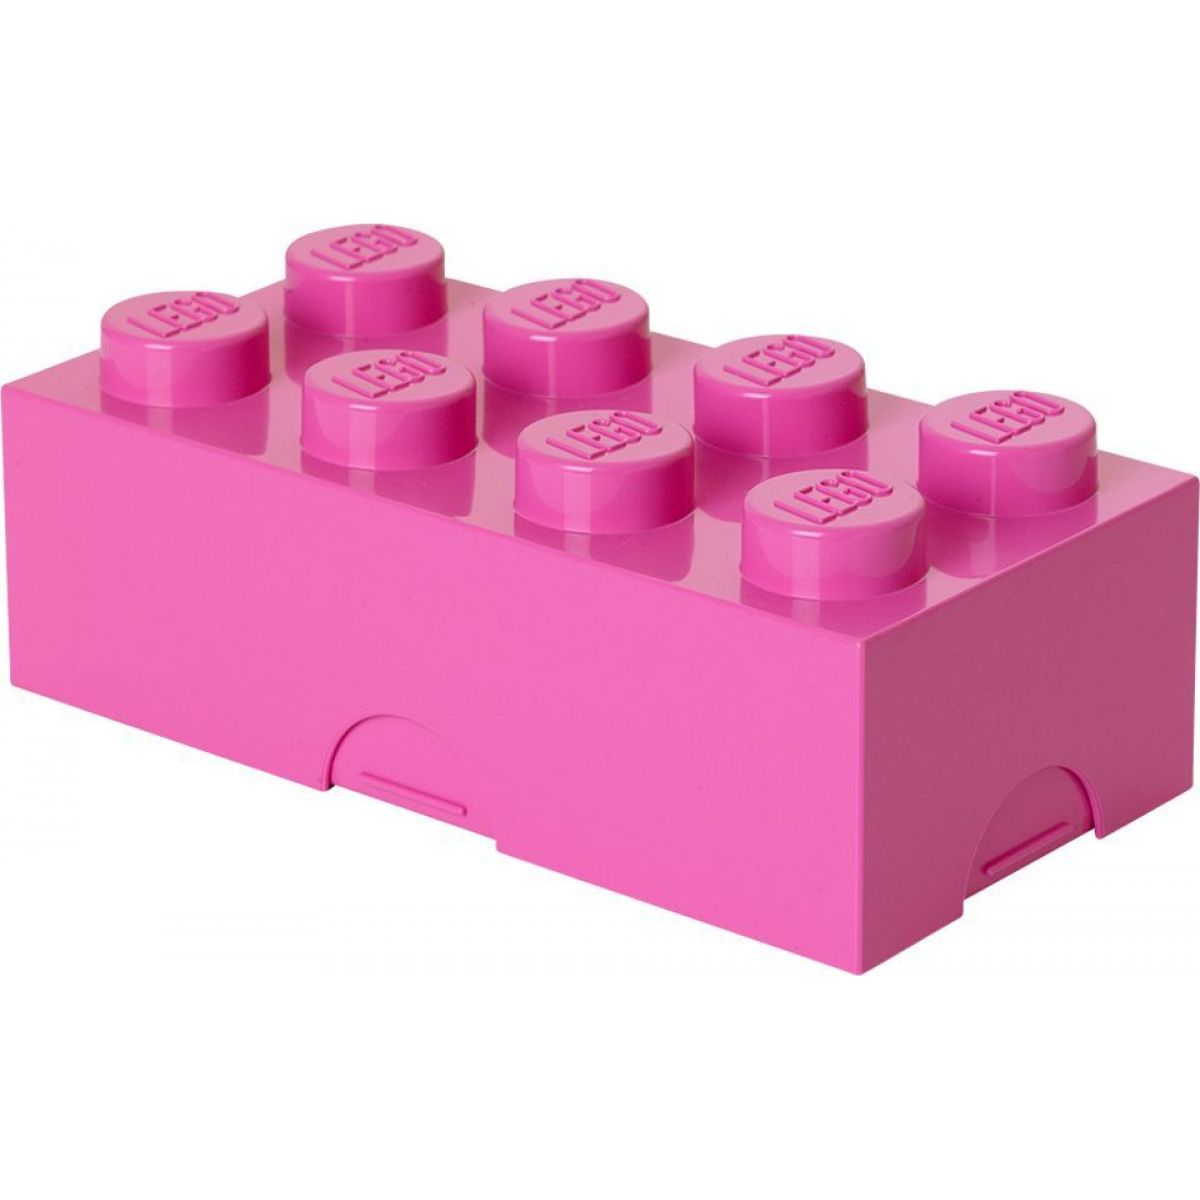 LEGO® Box na svačinu 10 x 20 x 7,5 cm růžový